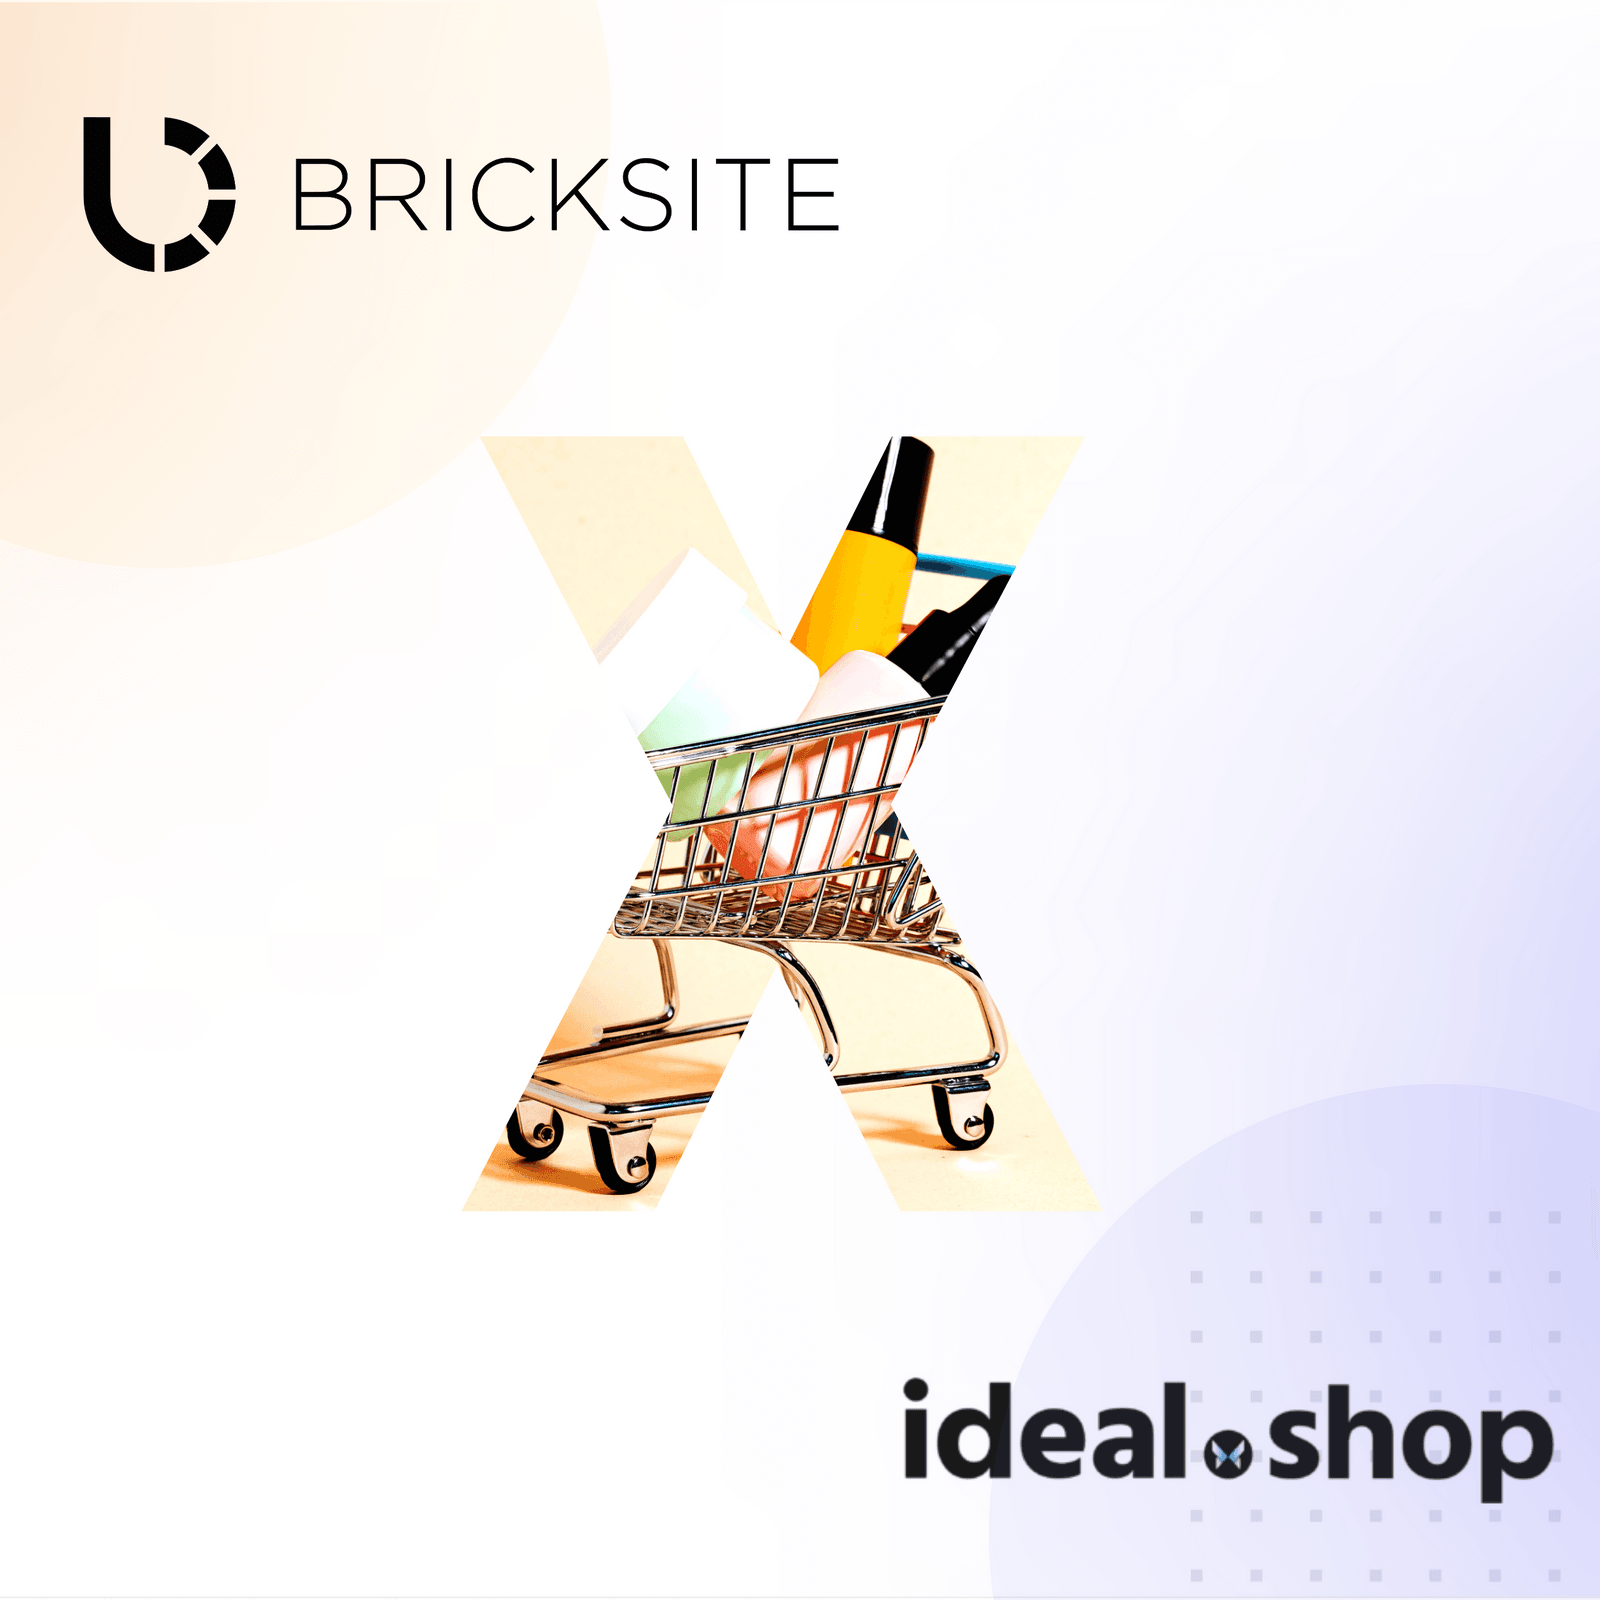 Nyhed 🎉 Webshop med Bricksite x ideal.shop